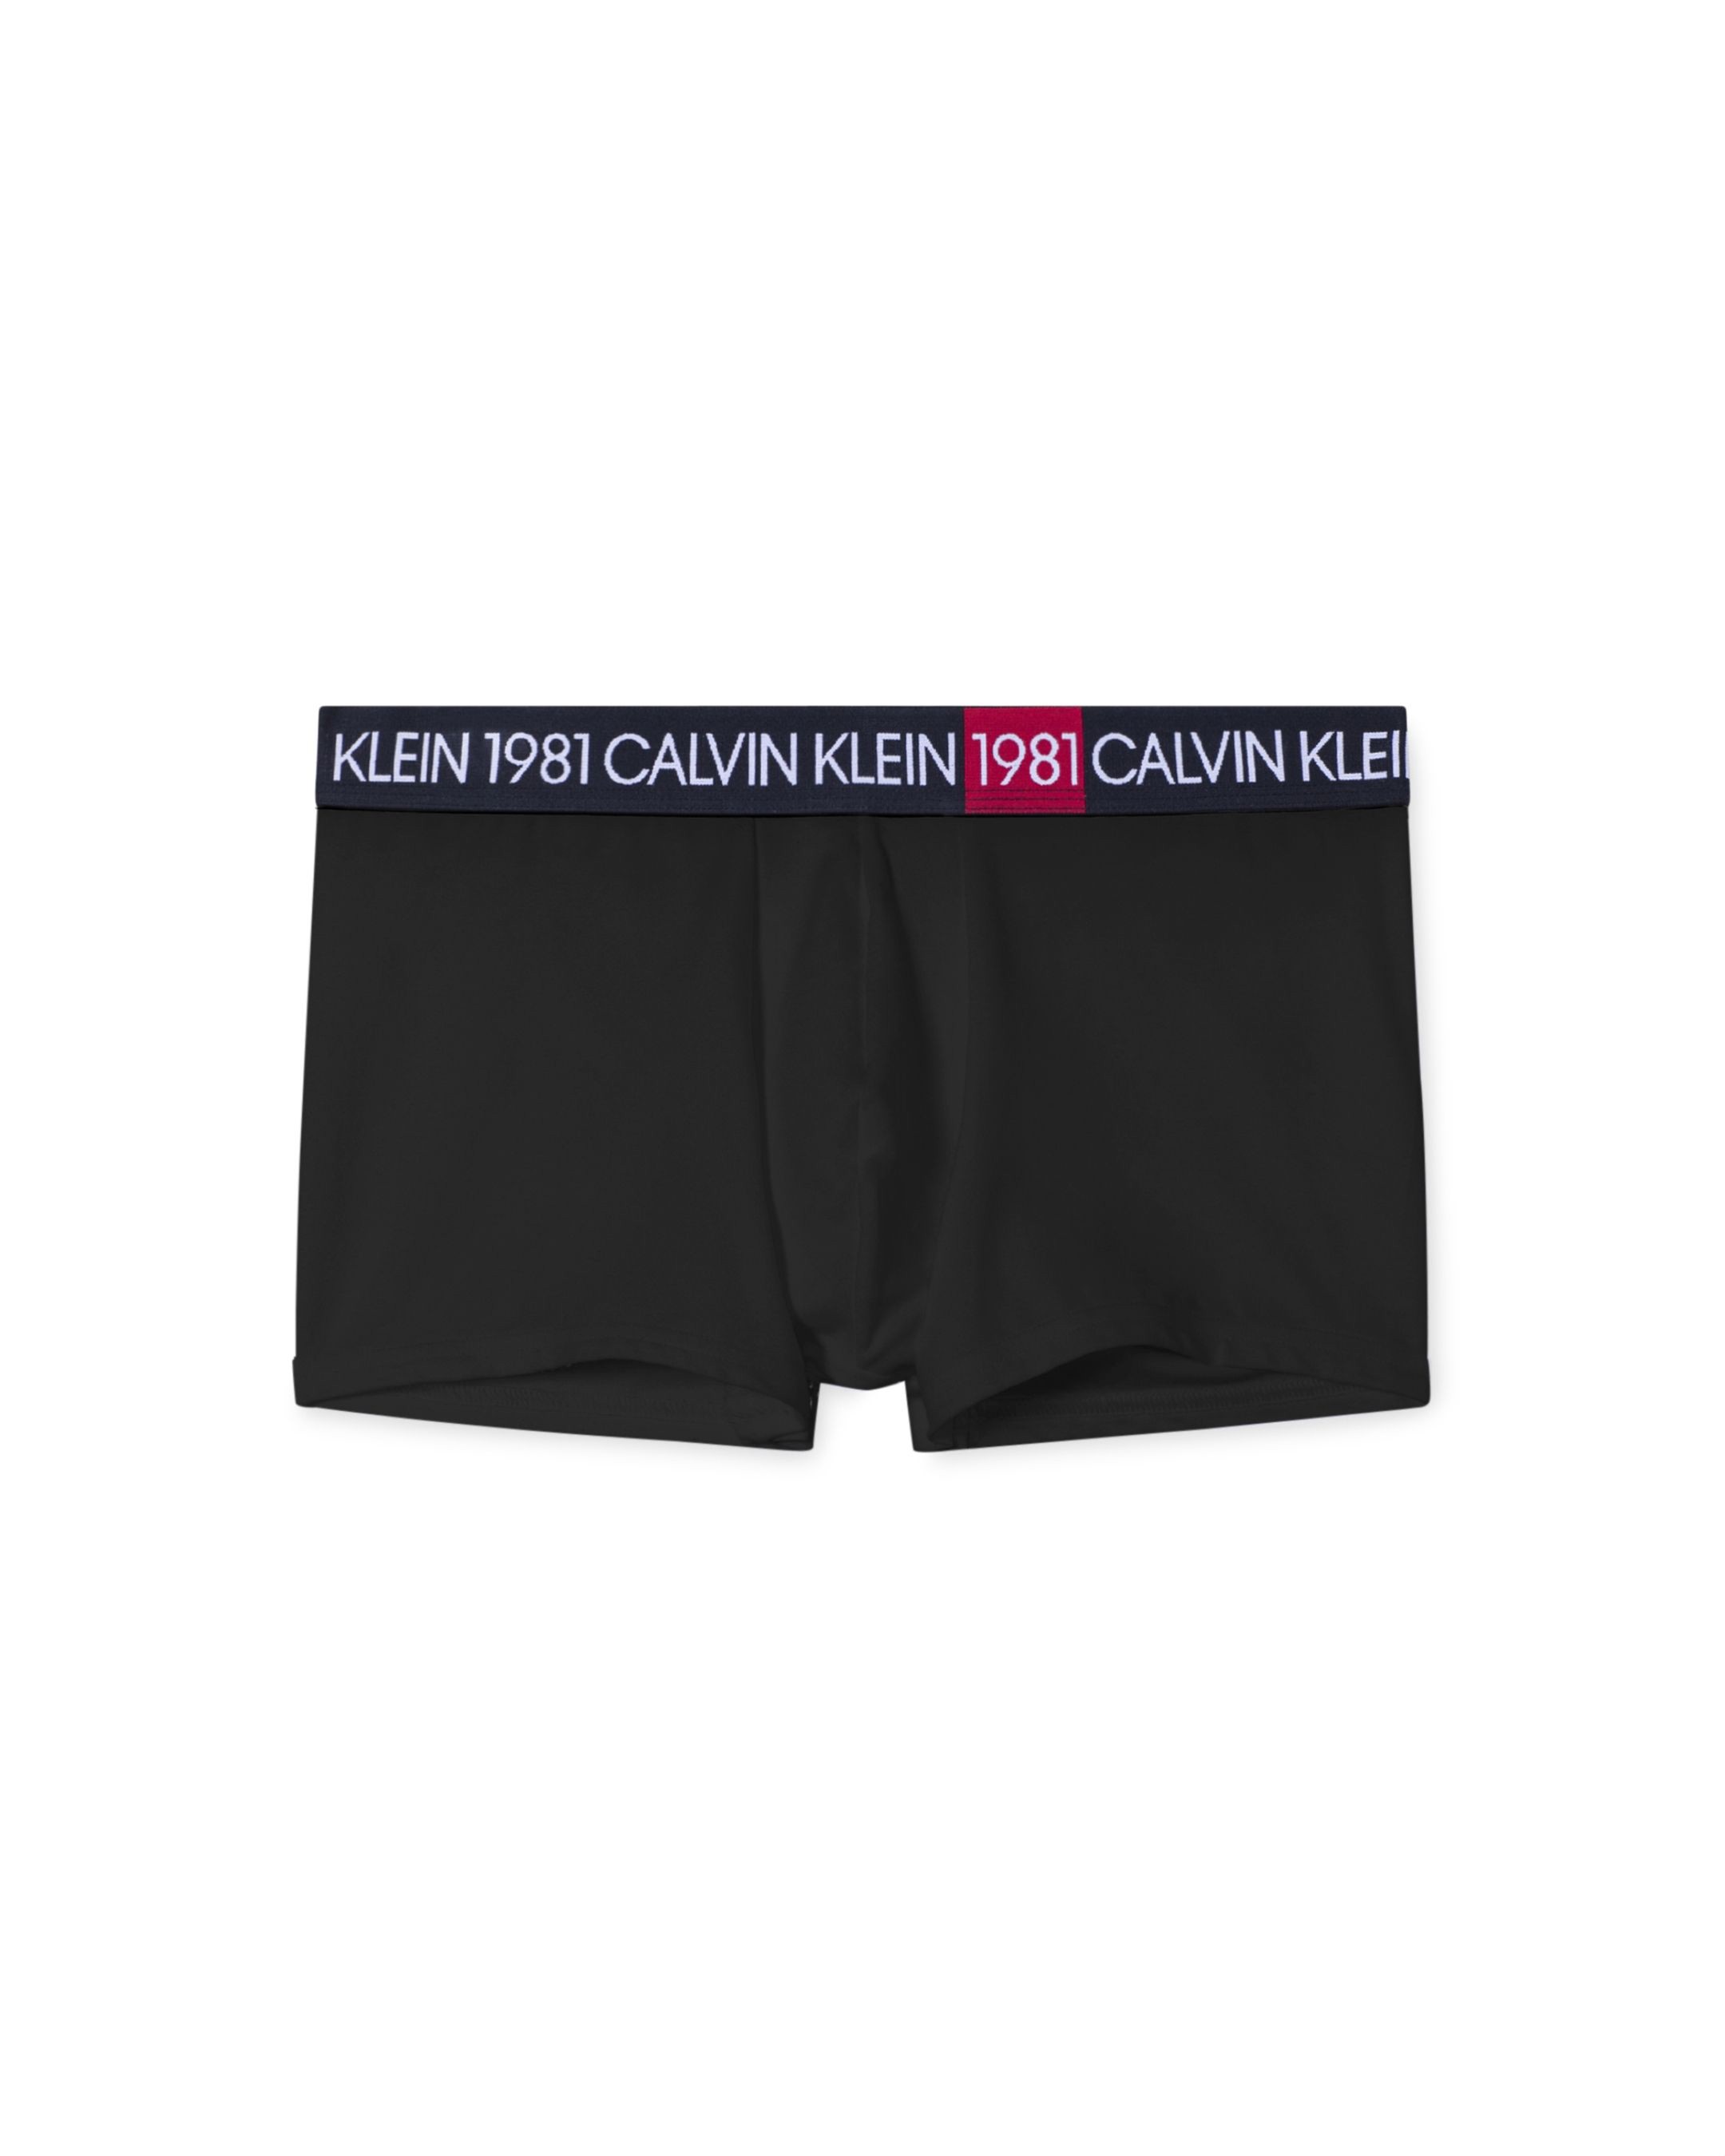 Calvin Klein Boxer NB2050 001 Black - Nuova Collezione Autunno Inverno 2019 - 2020